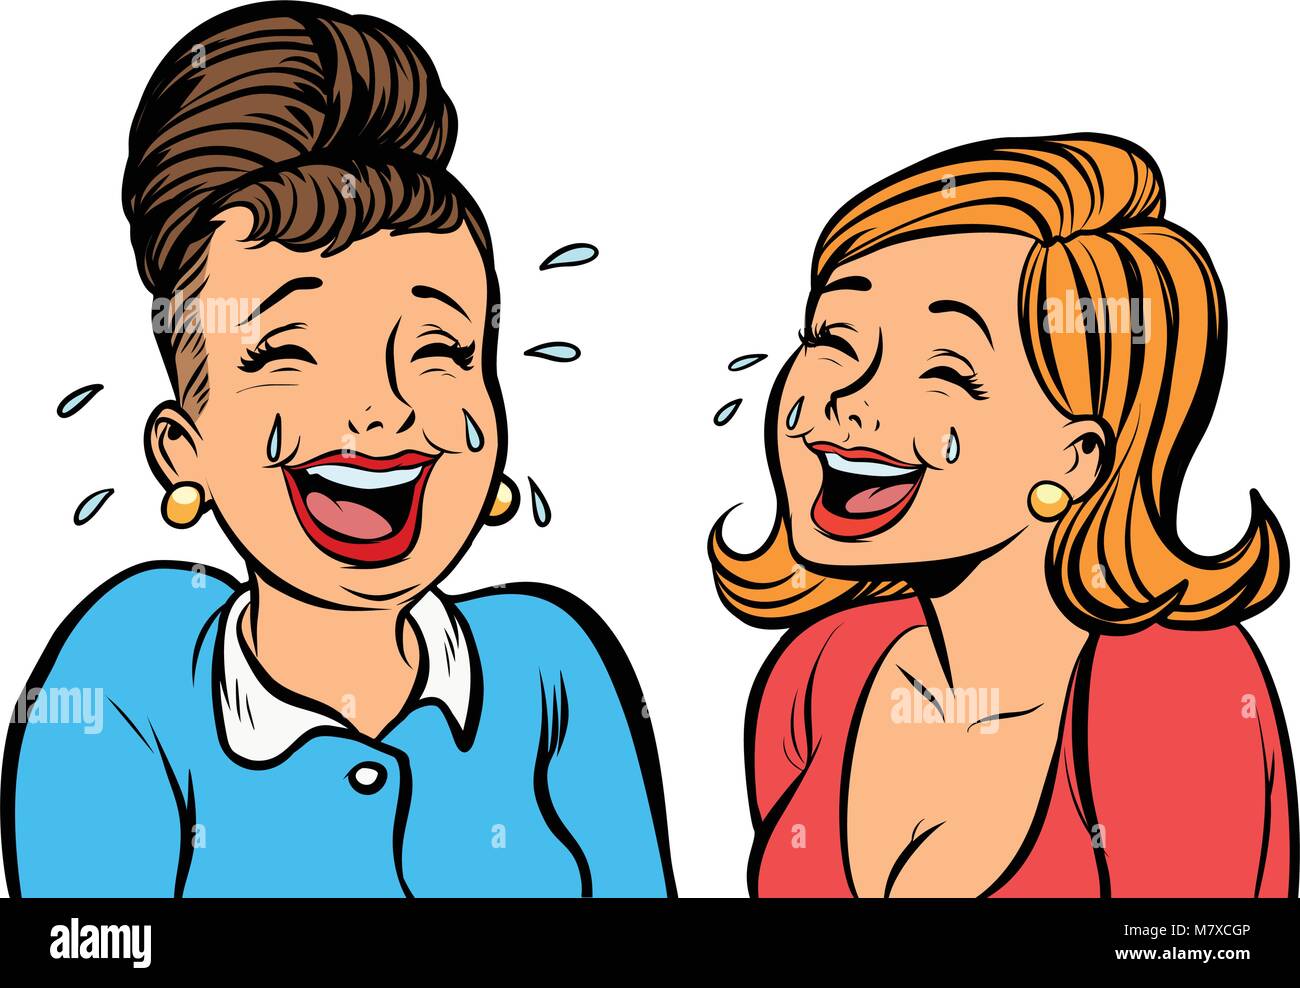 Copines joyeux femmes rient isoler sur fond blanc Illustration de Vecteur